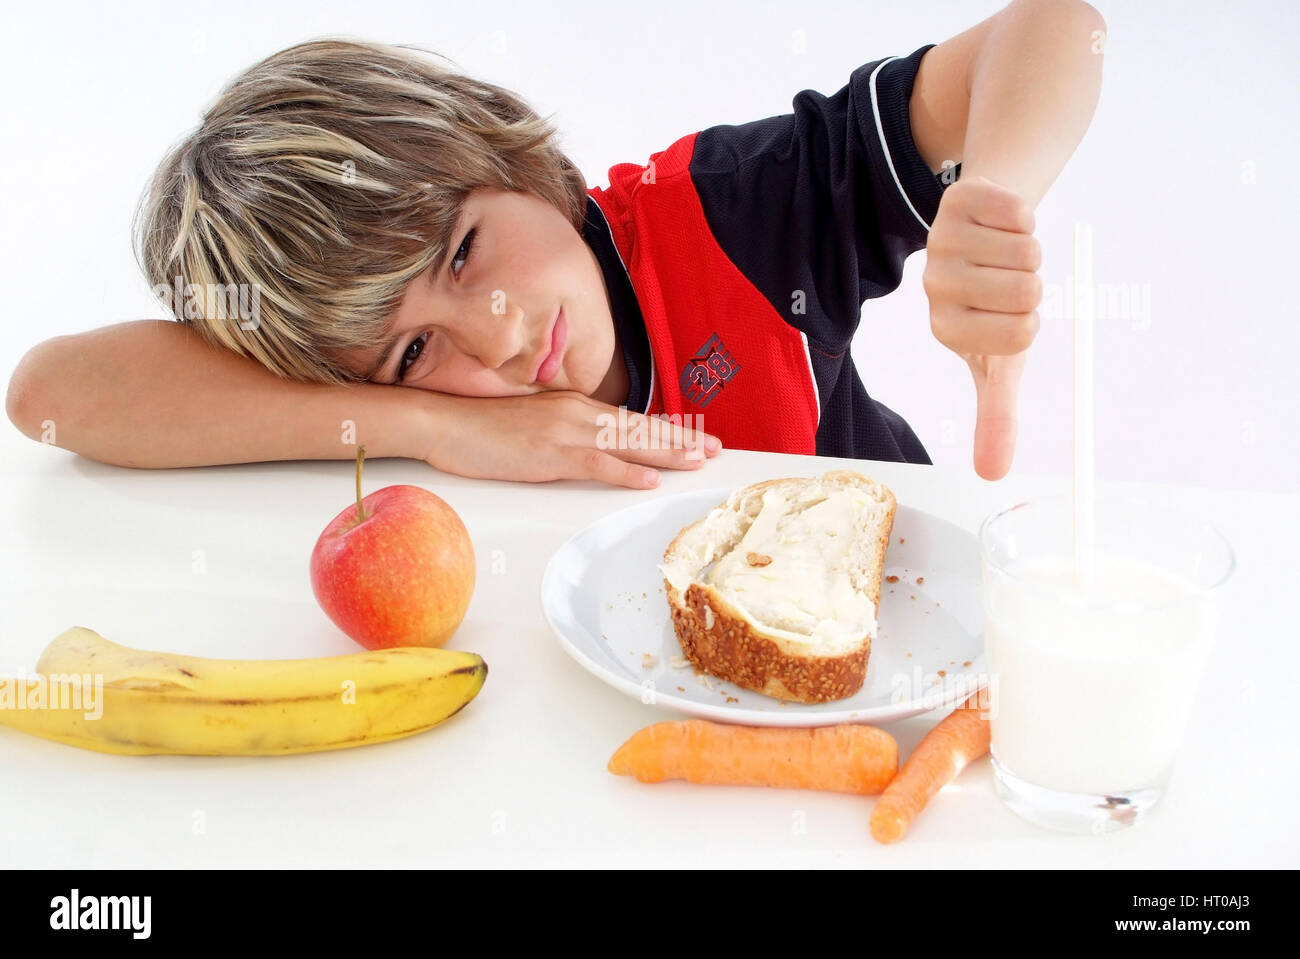 Schuljunge mag sein gesundes Fr?hst?ck nicht - boy doesn¥t like healthy breakfast Stock Photo